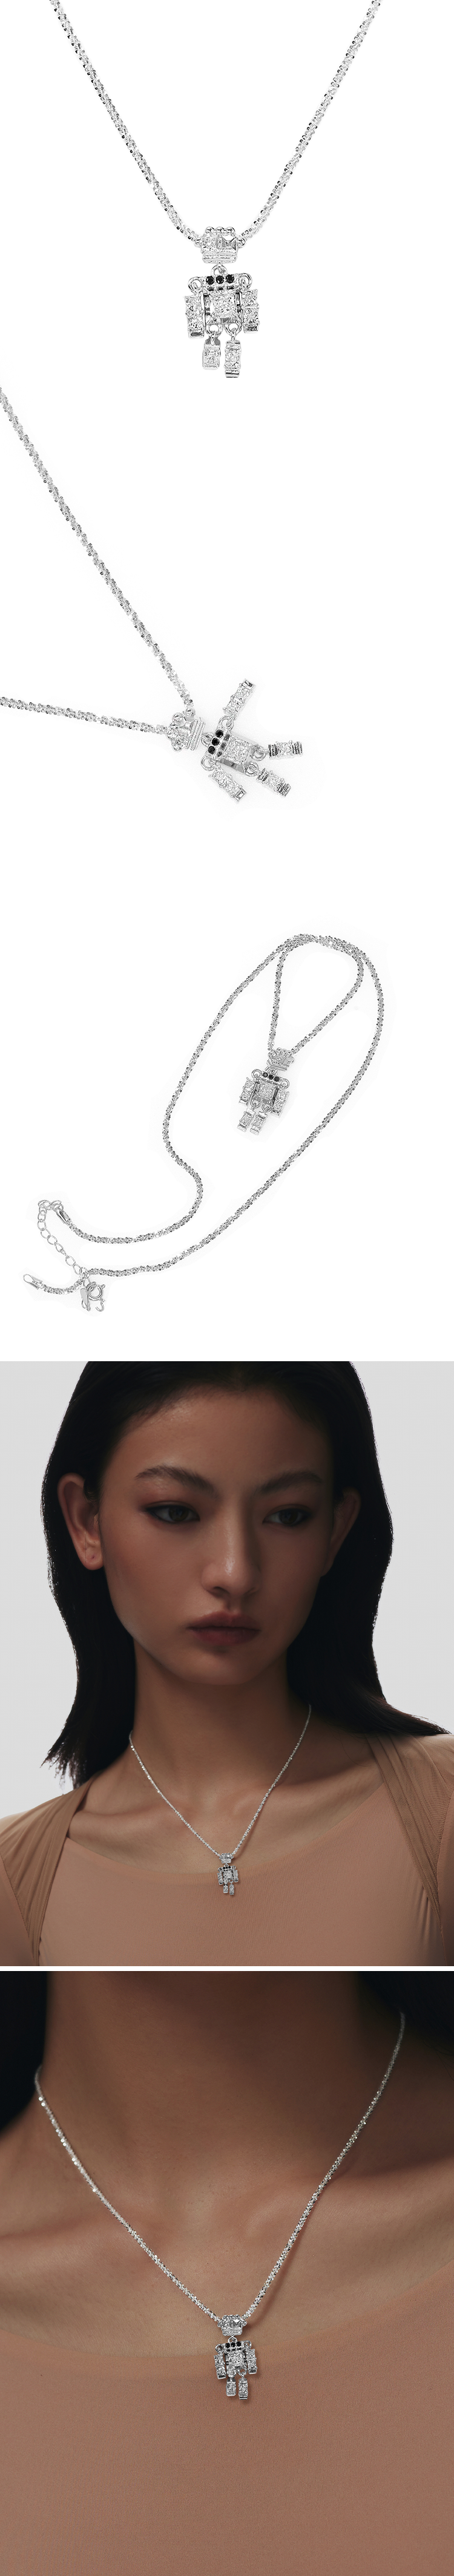 karat robot chain necklace